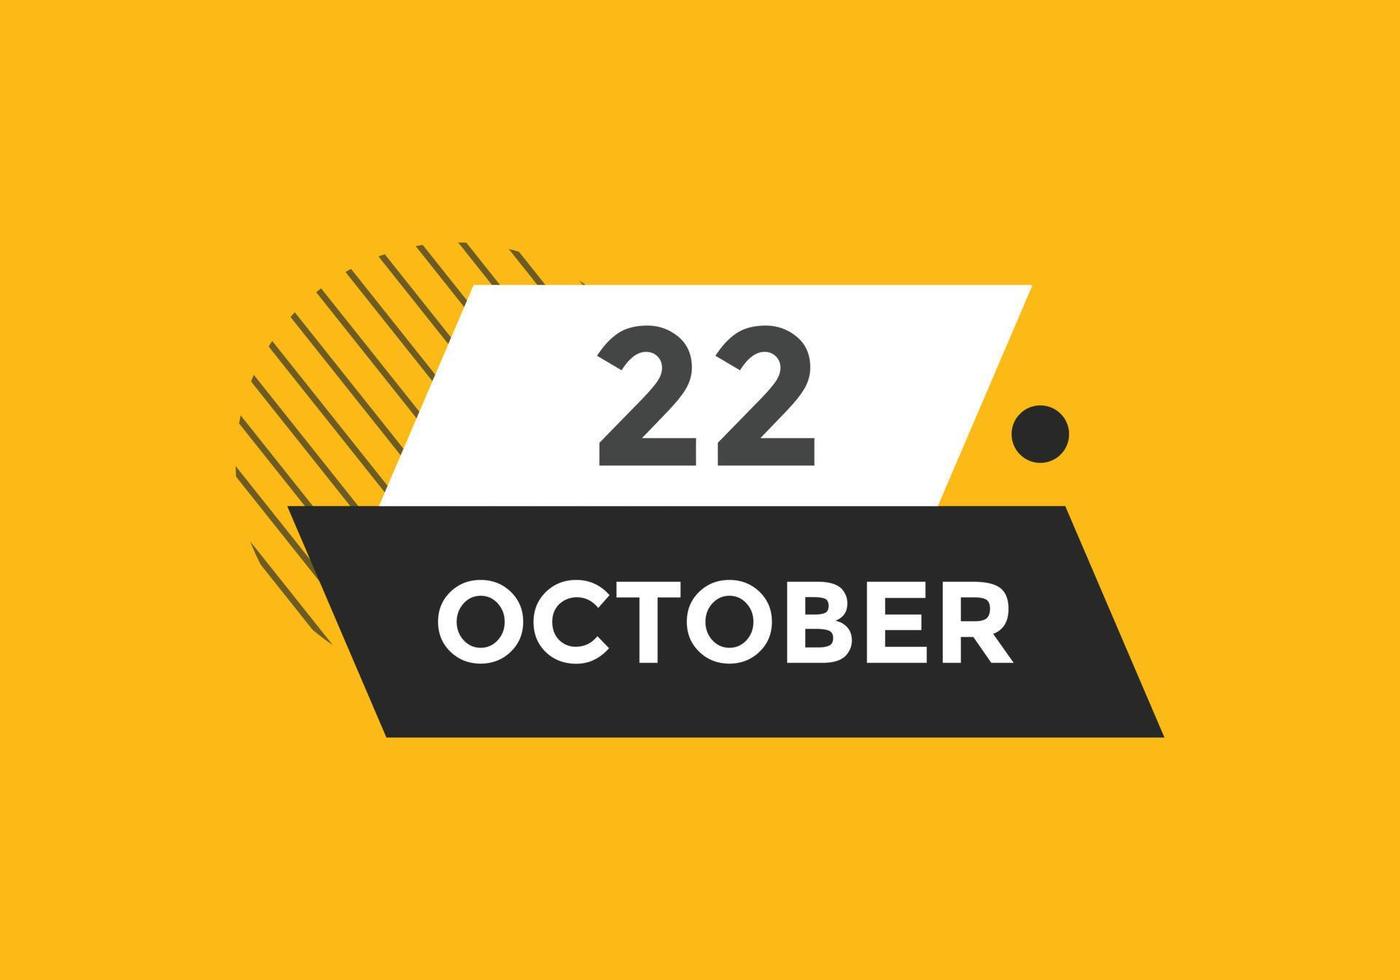 ottobre 22 calendario promemoria. 22 ottobre quotidiano calendario icona modello. calendario 22 ottobre icona design modello. vettore illustrazione